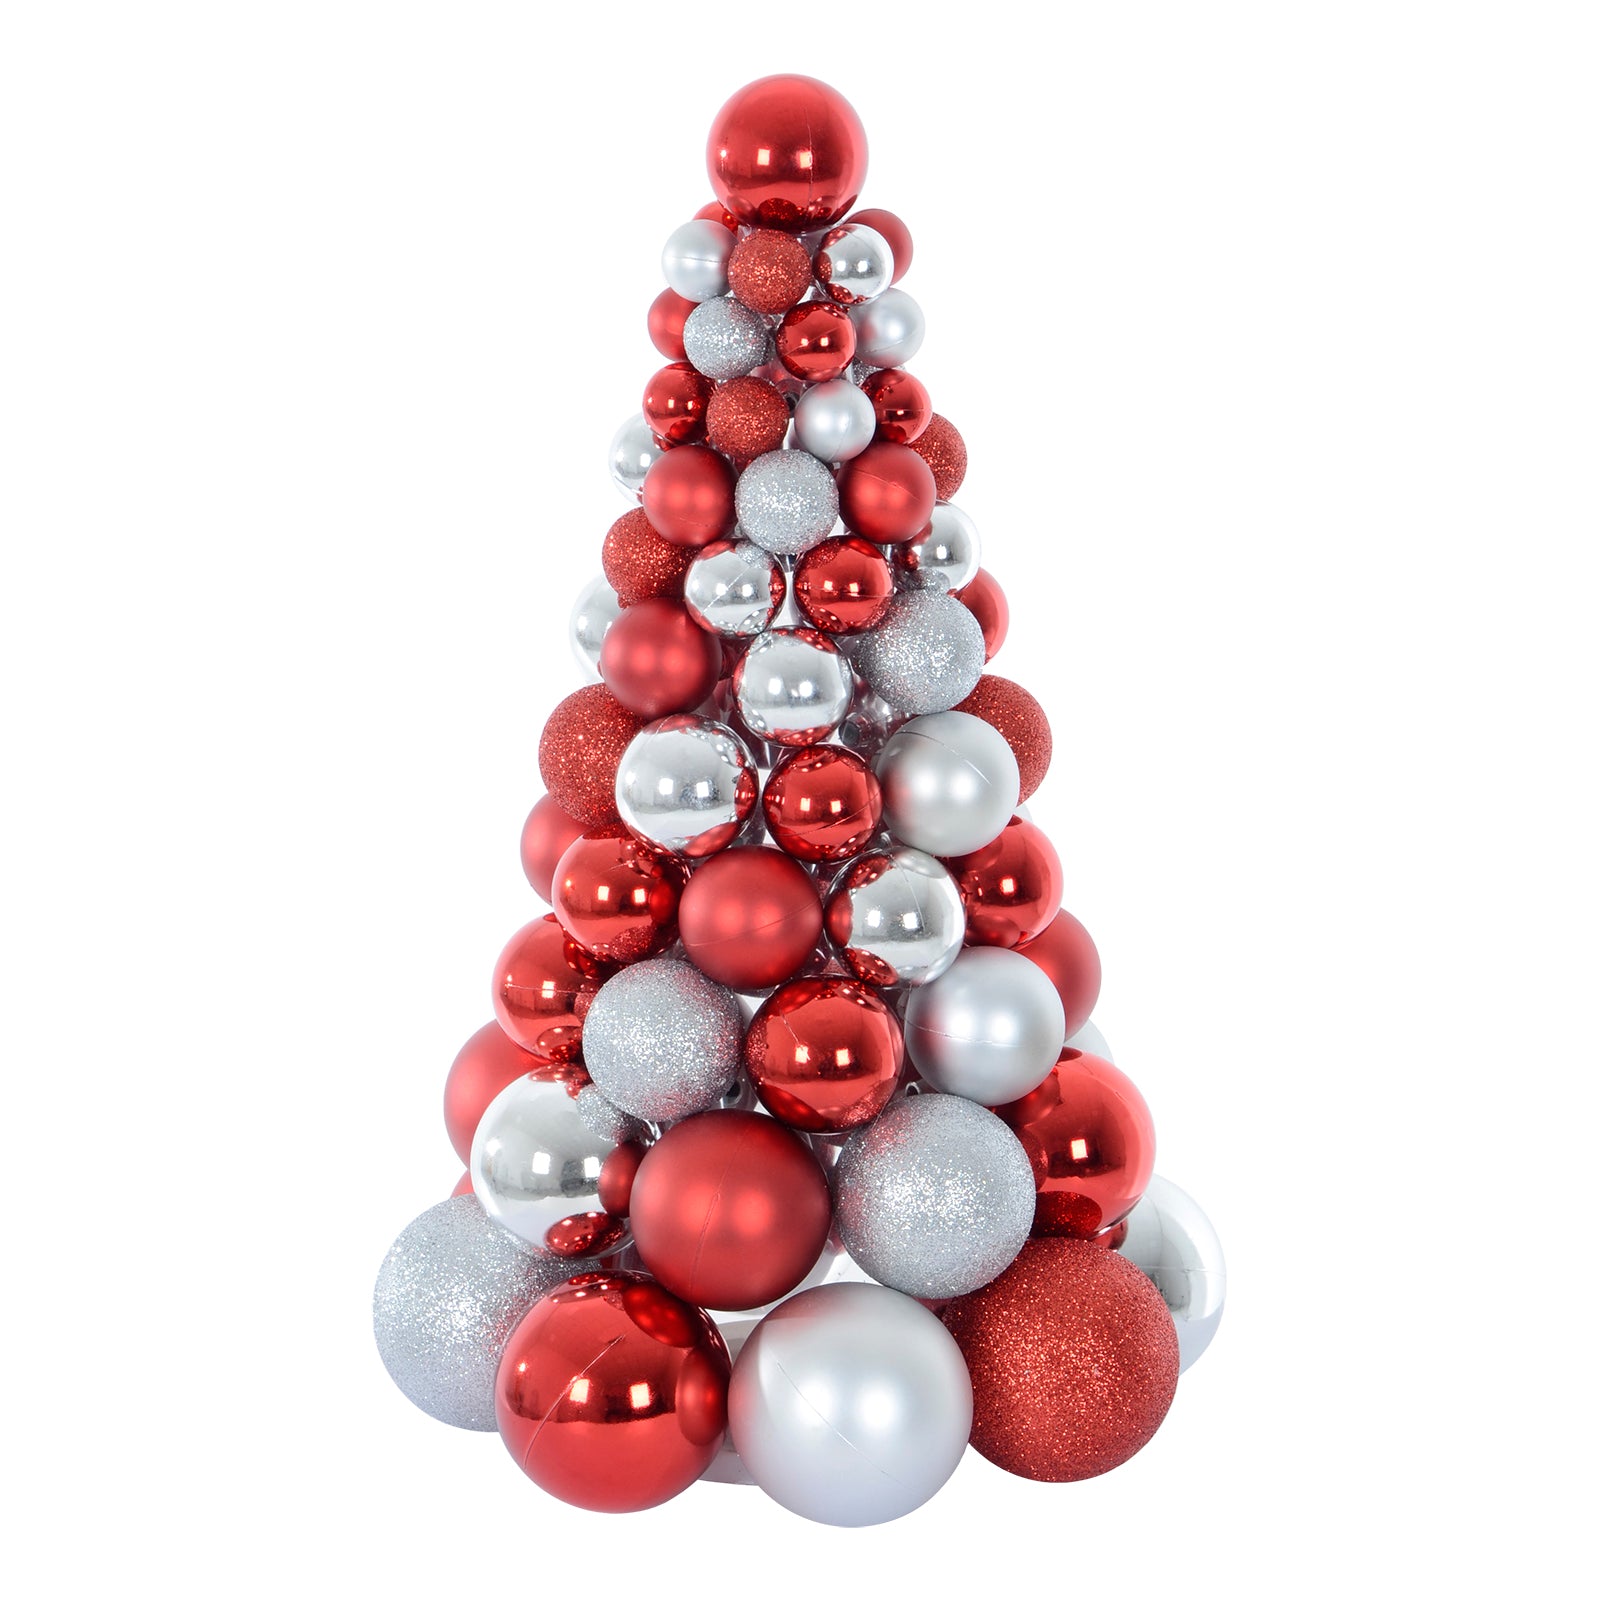 Mr Crimbo Mixed Bauble Tree Shaped Christmas Decoration 34cm - MrCrimbo.co.uk -XS6454 - Red -bauble decorations